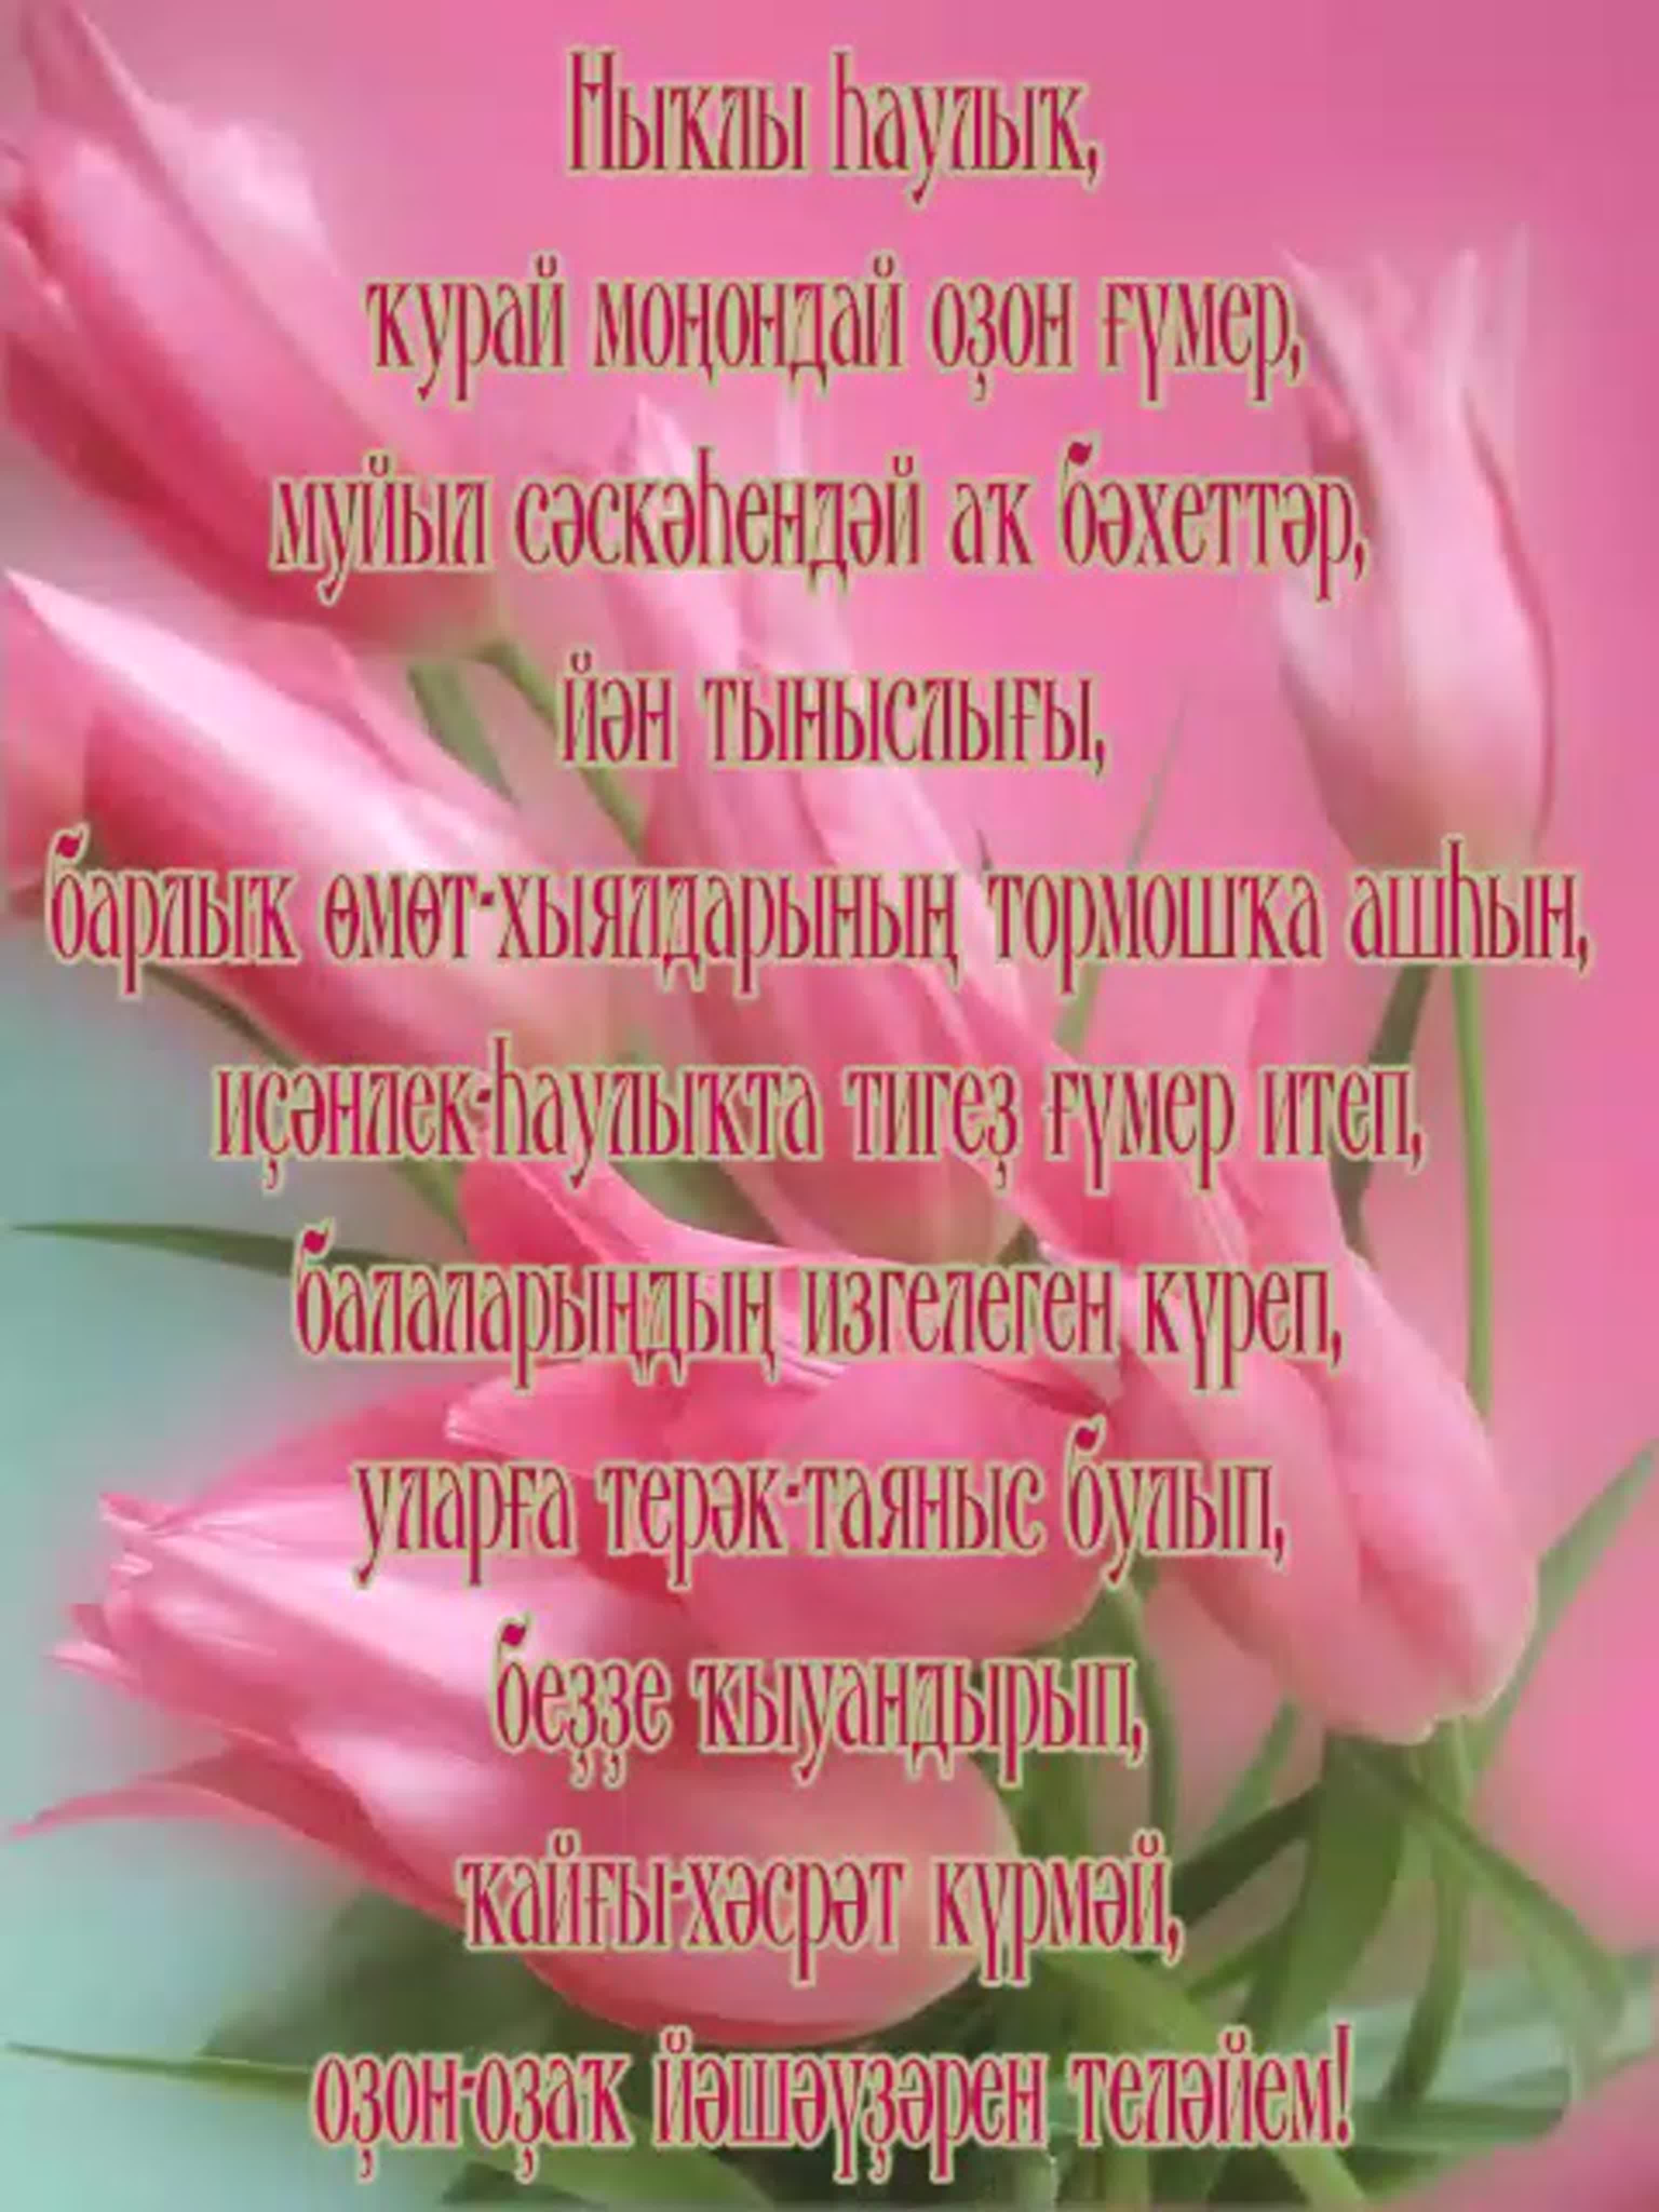 Поздравление на башкирском. Поздравления с днём рождения на башкирском. Поздравления на башкирском языке. Поздравления с днём рождения на башкирском языке. Пожелания на башкирском языке.